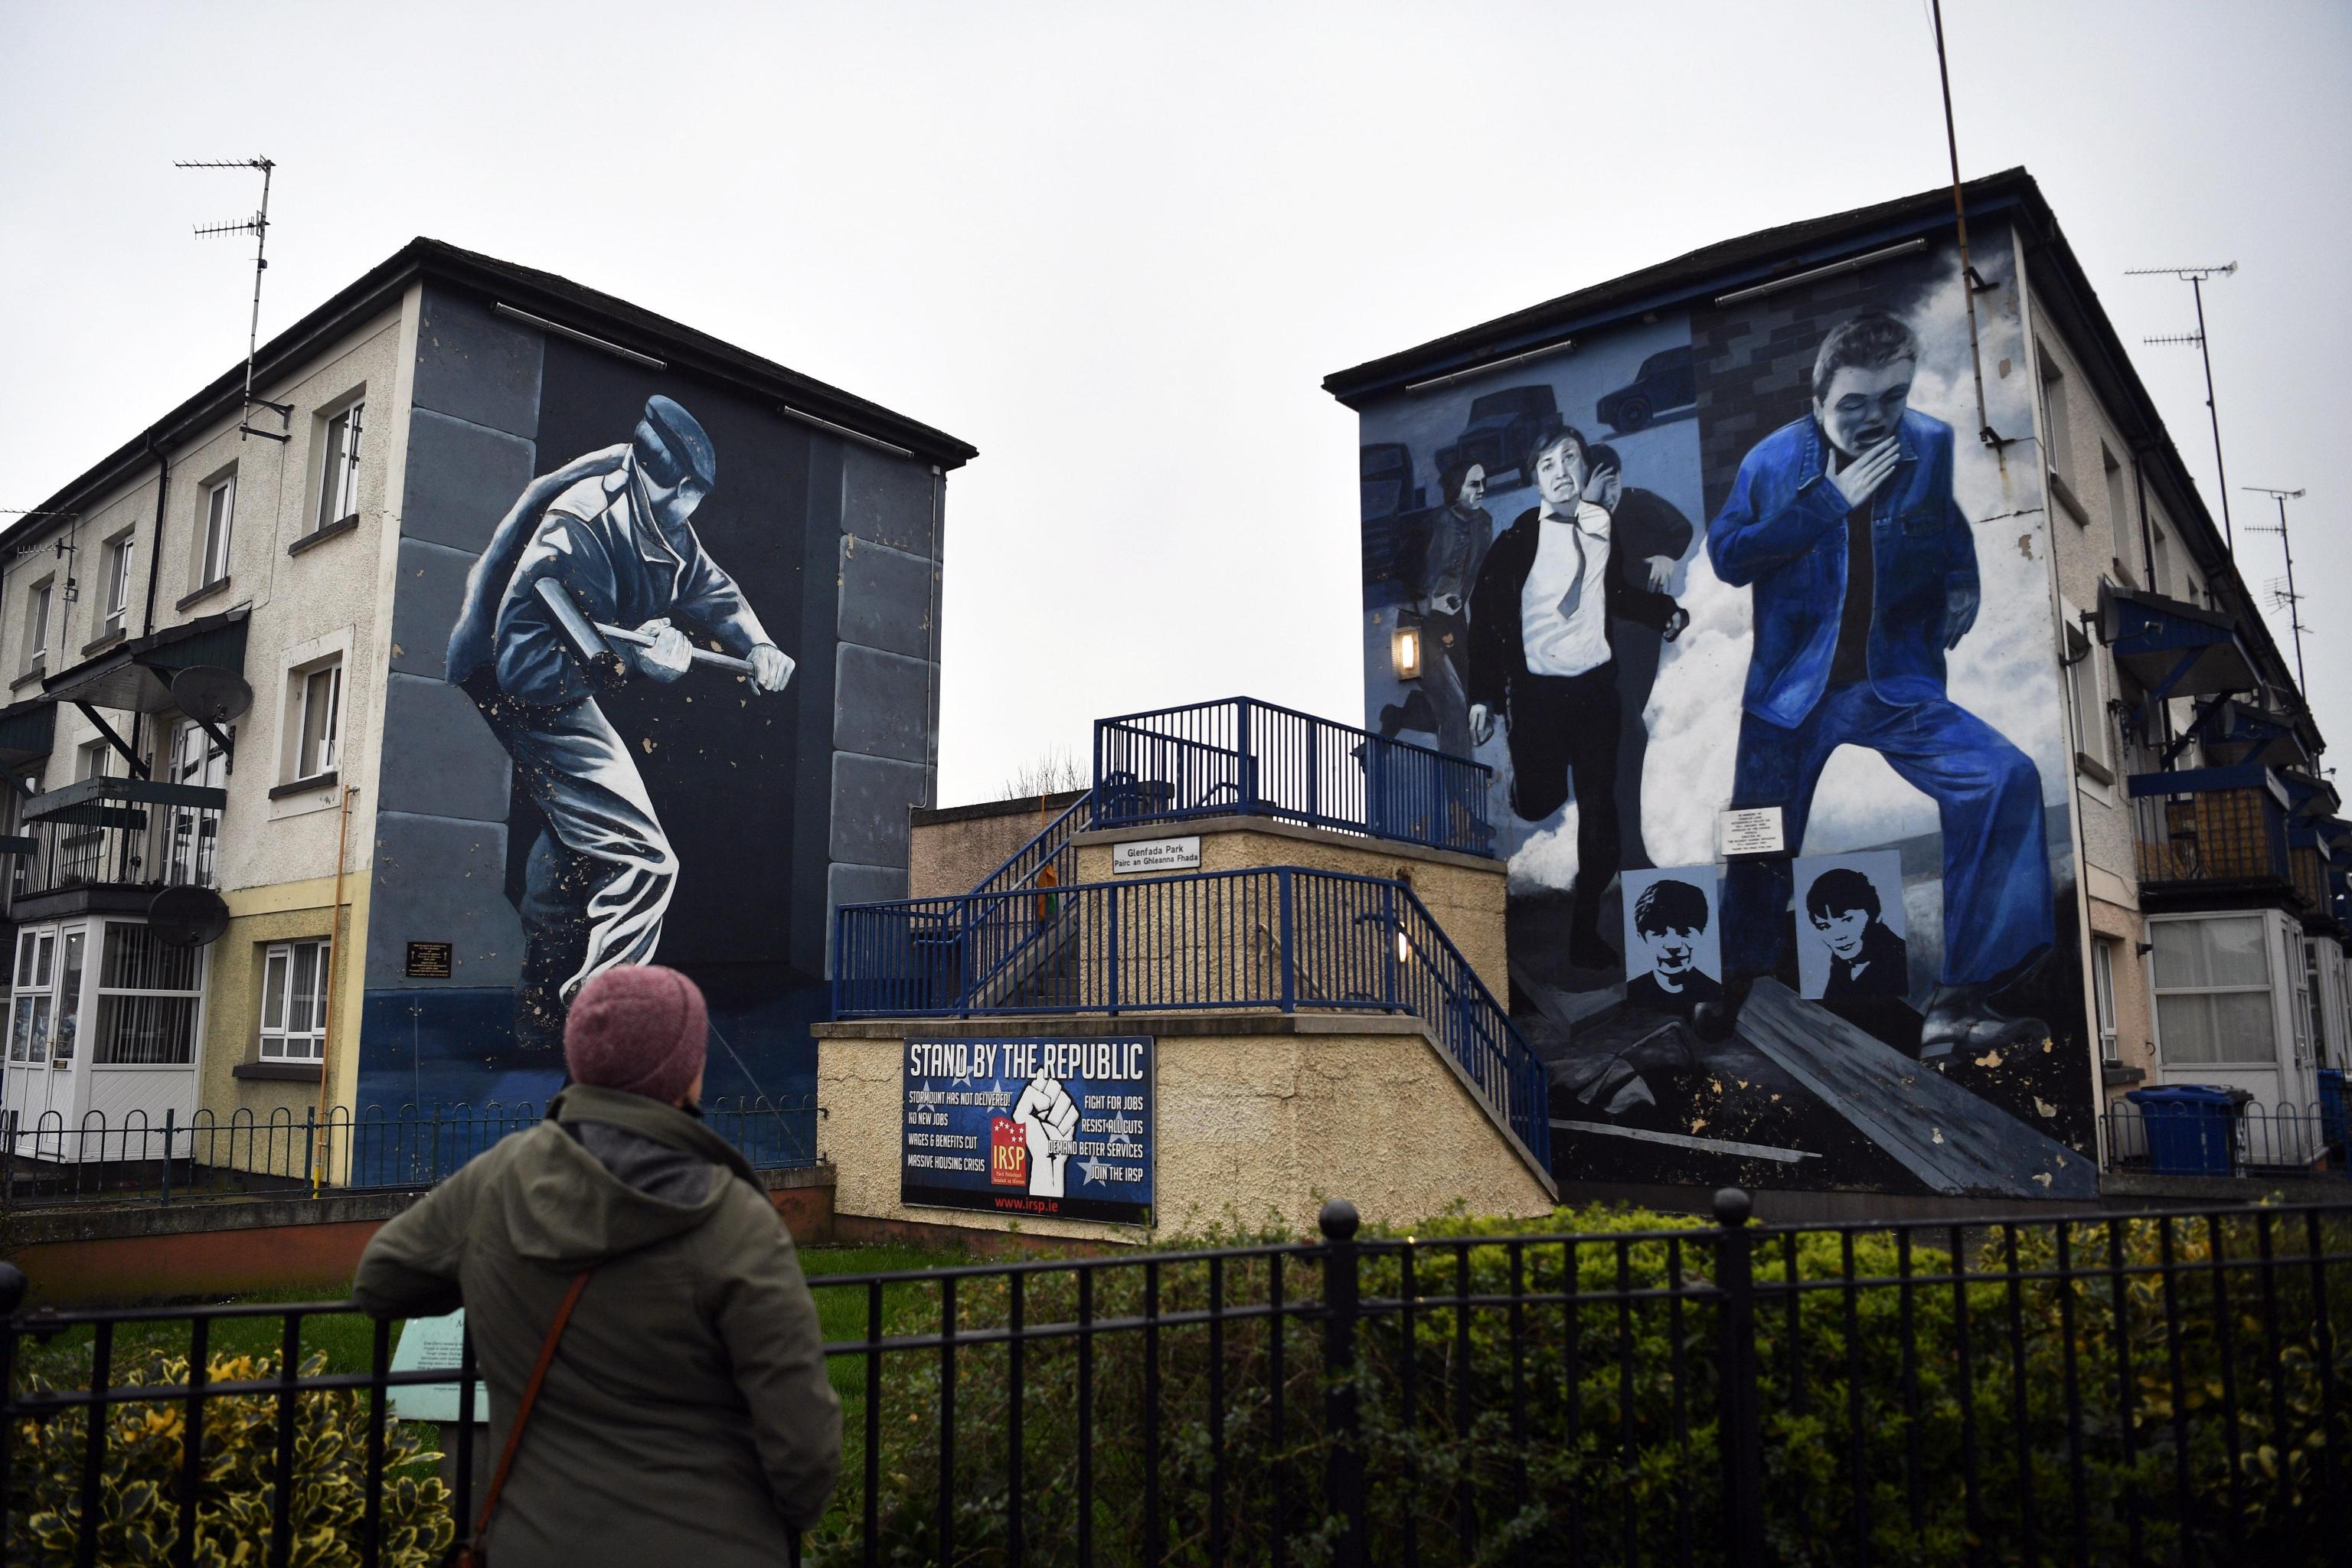 Una donna guarda i murales dipinti su di un edificio nel quartiere The Bogside a Londonderry nell’Irlanda del Nord.